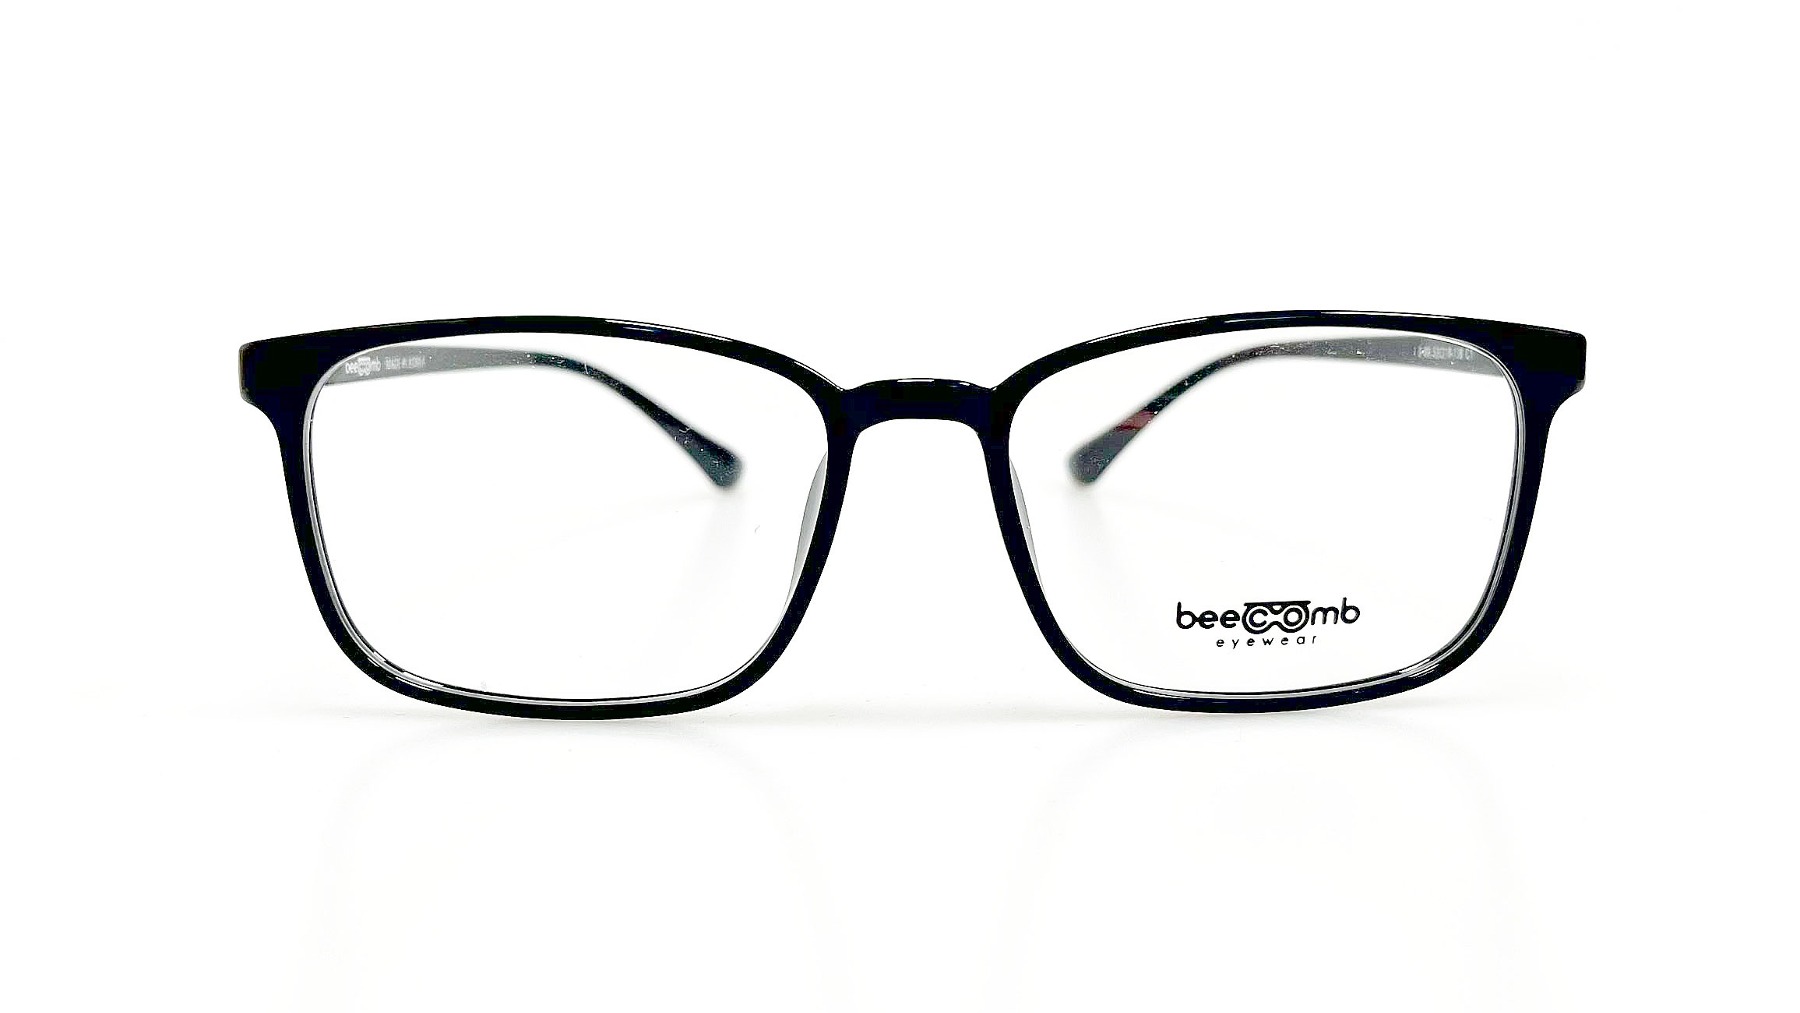 B-80, Korean glasses, sunglasses, eyeglasses, glasses